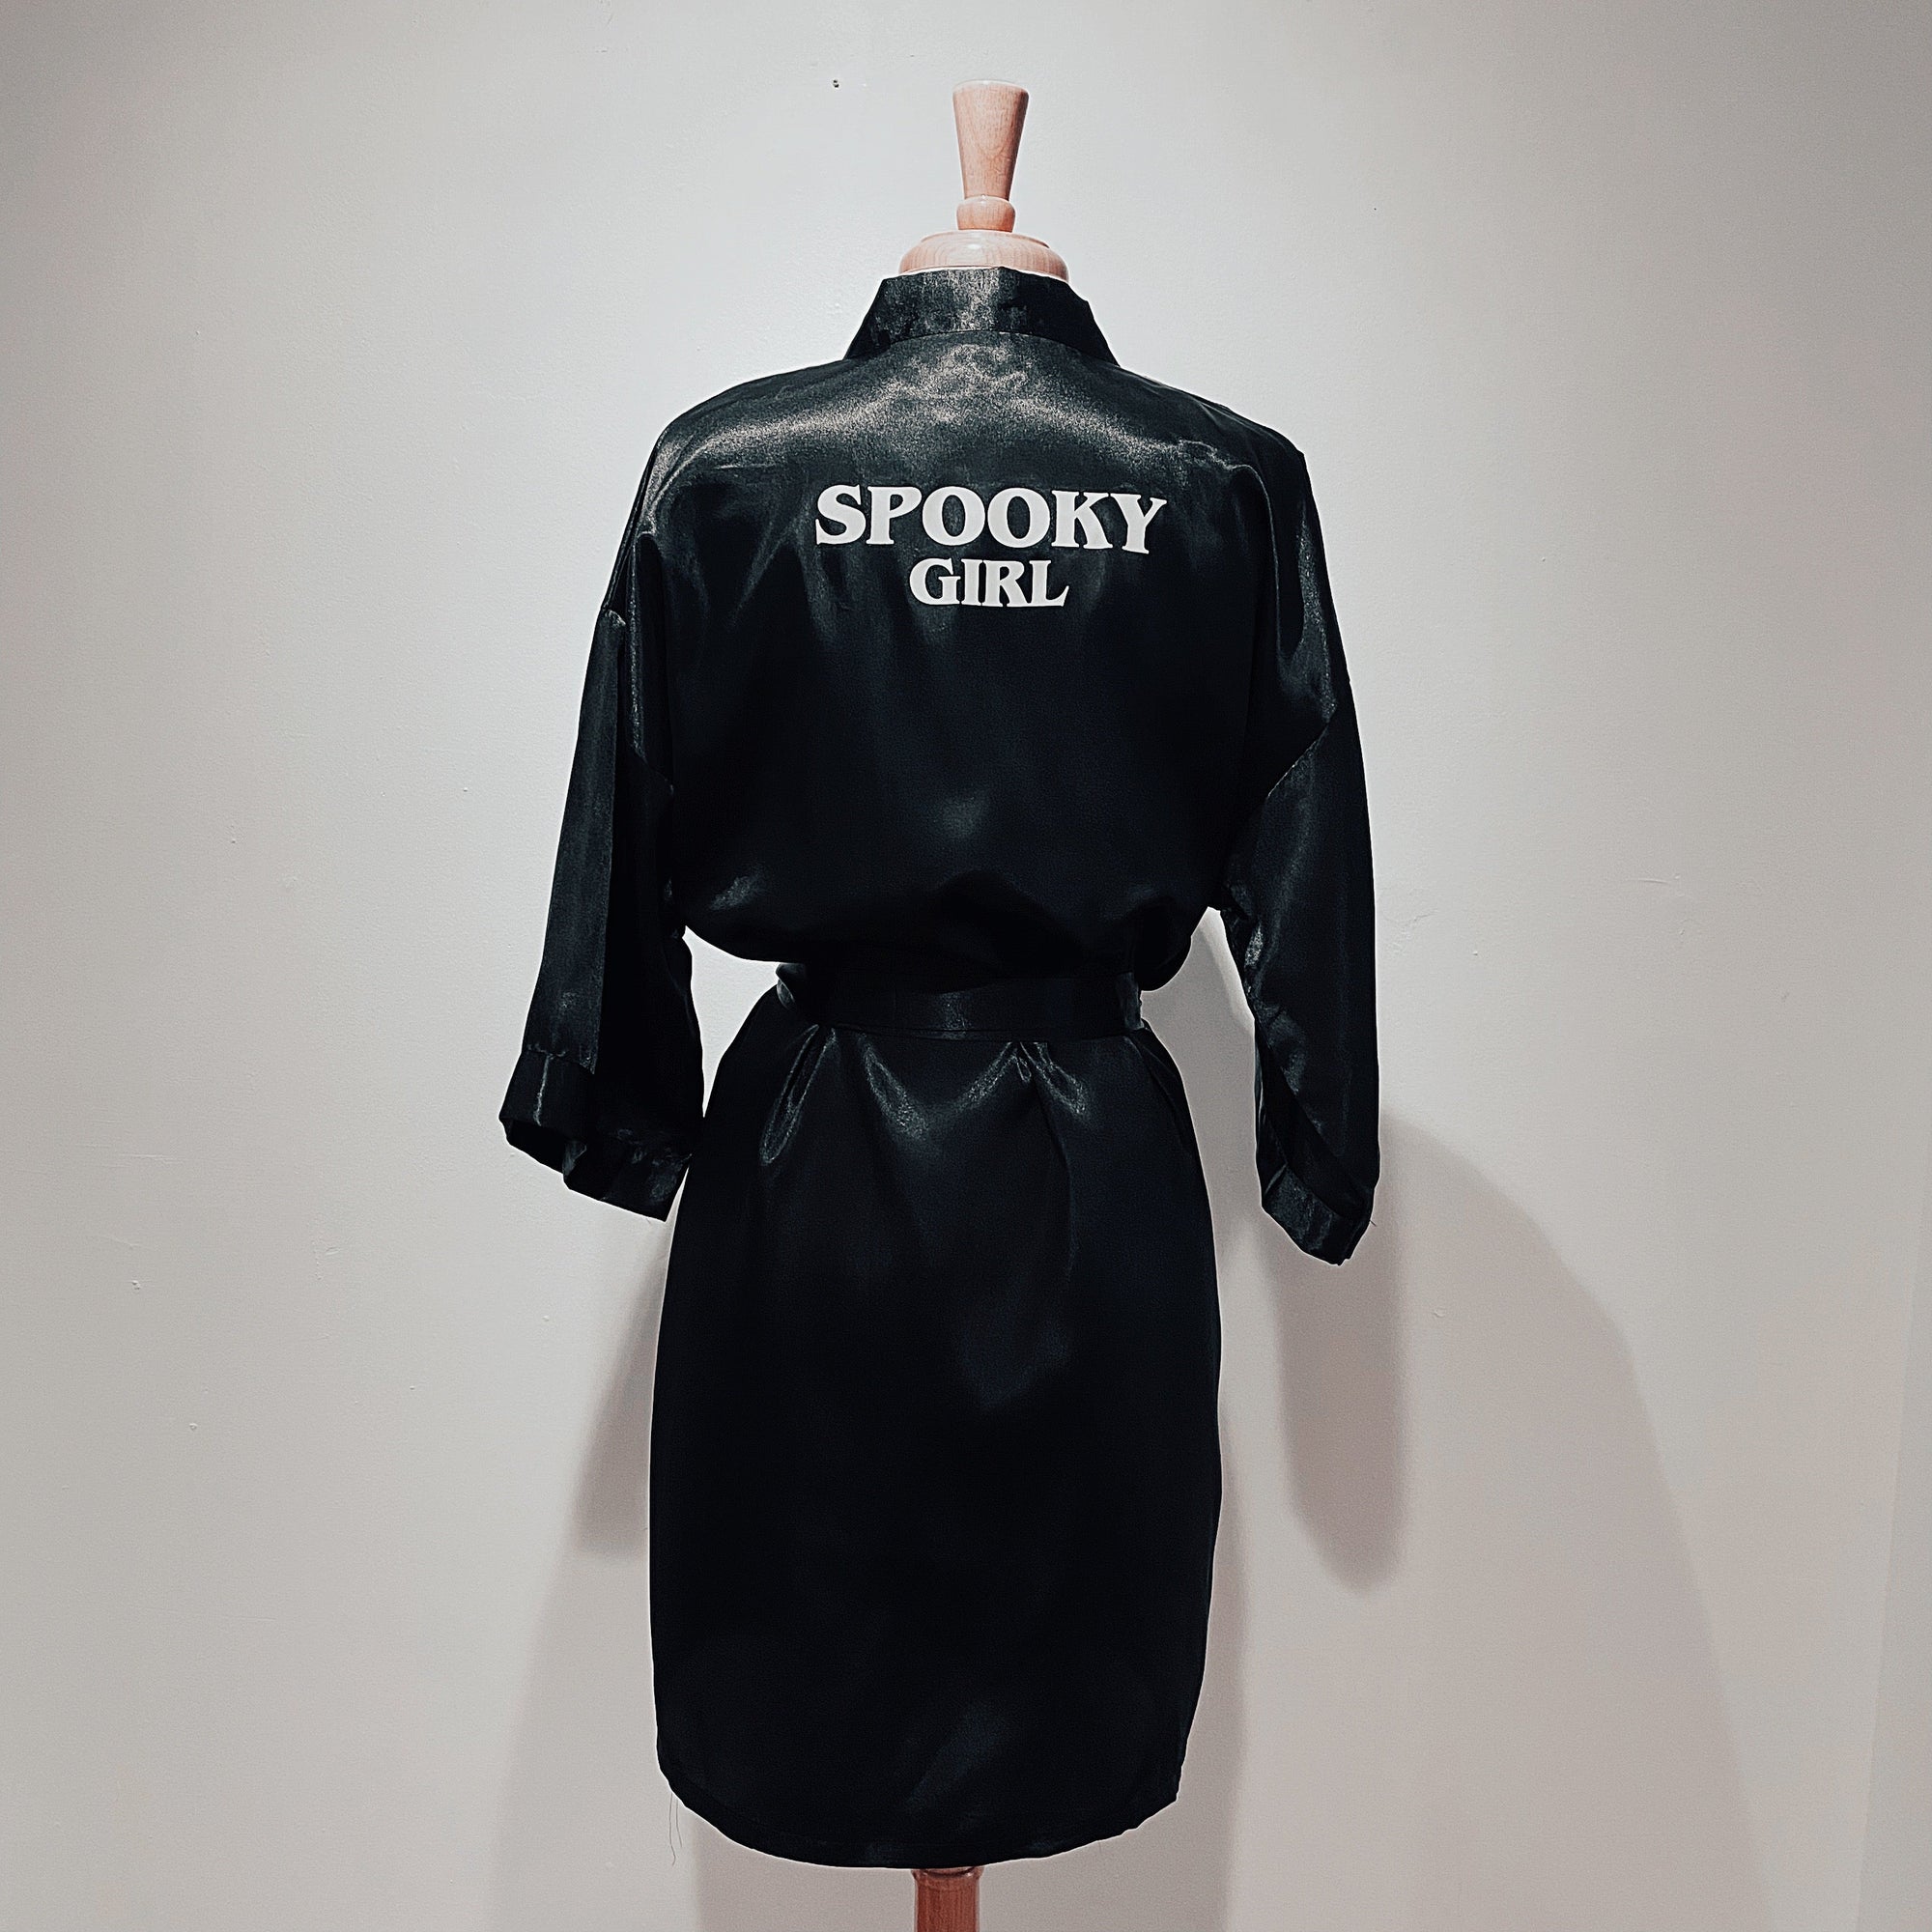 Spooky Girl Satin Robe or Swim Cover-up